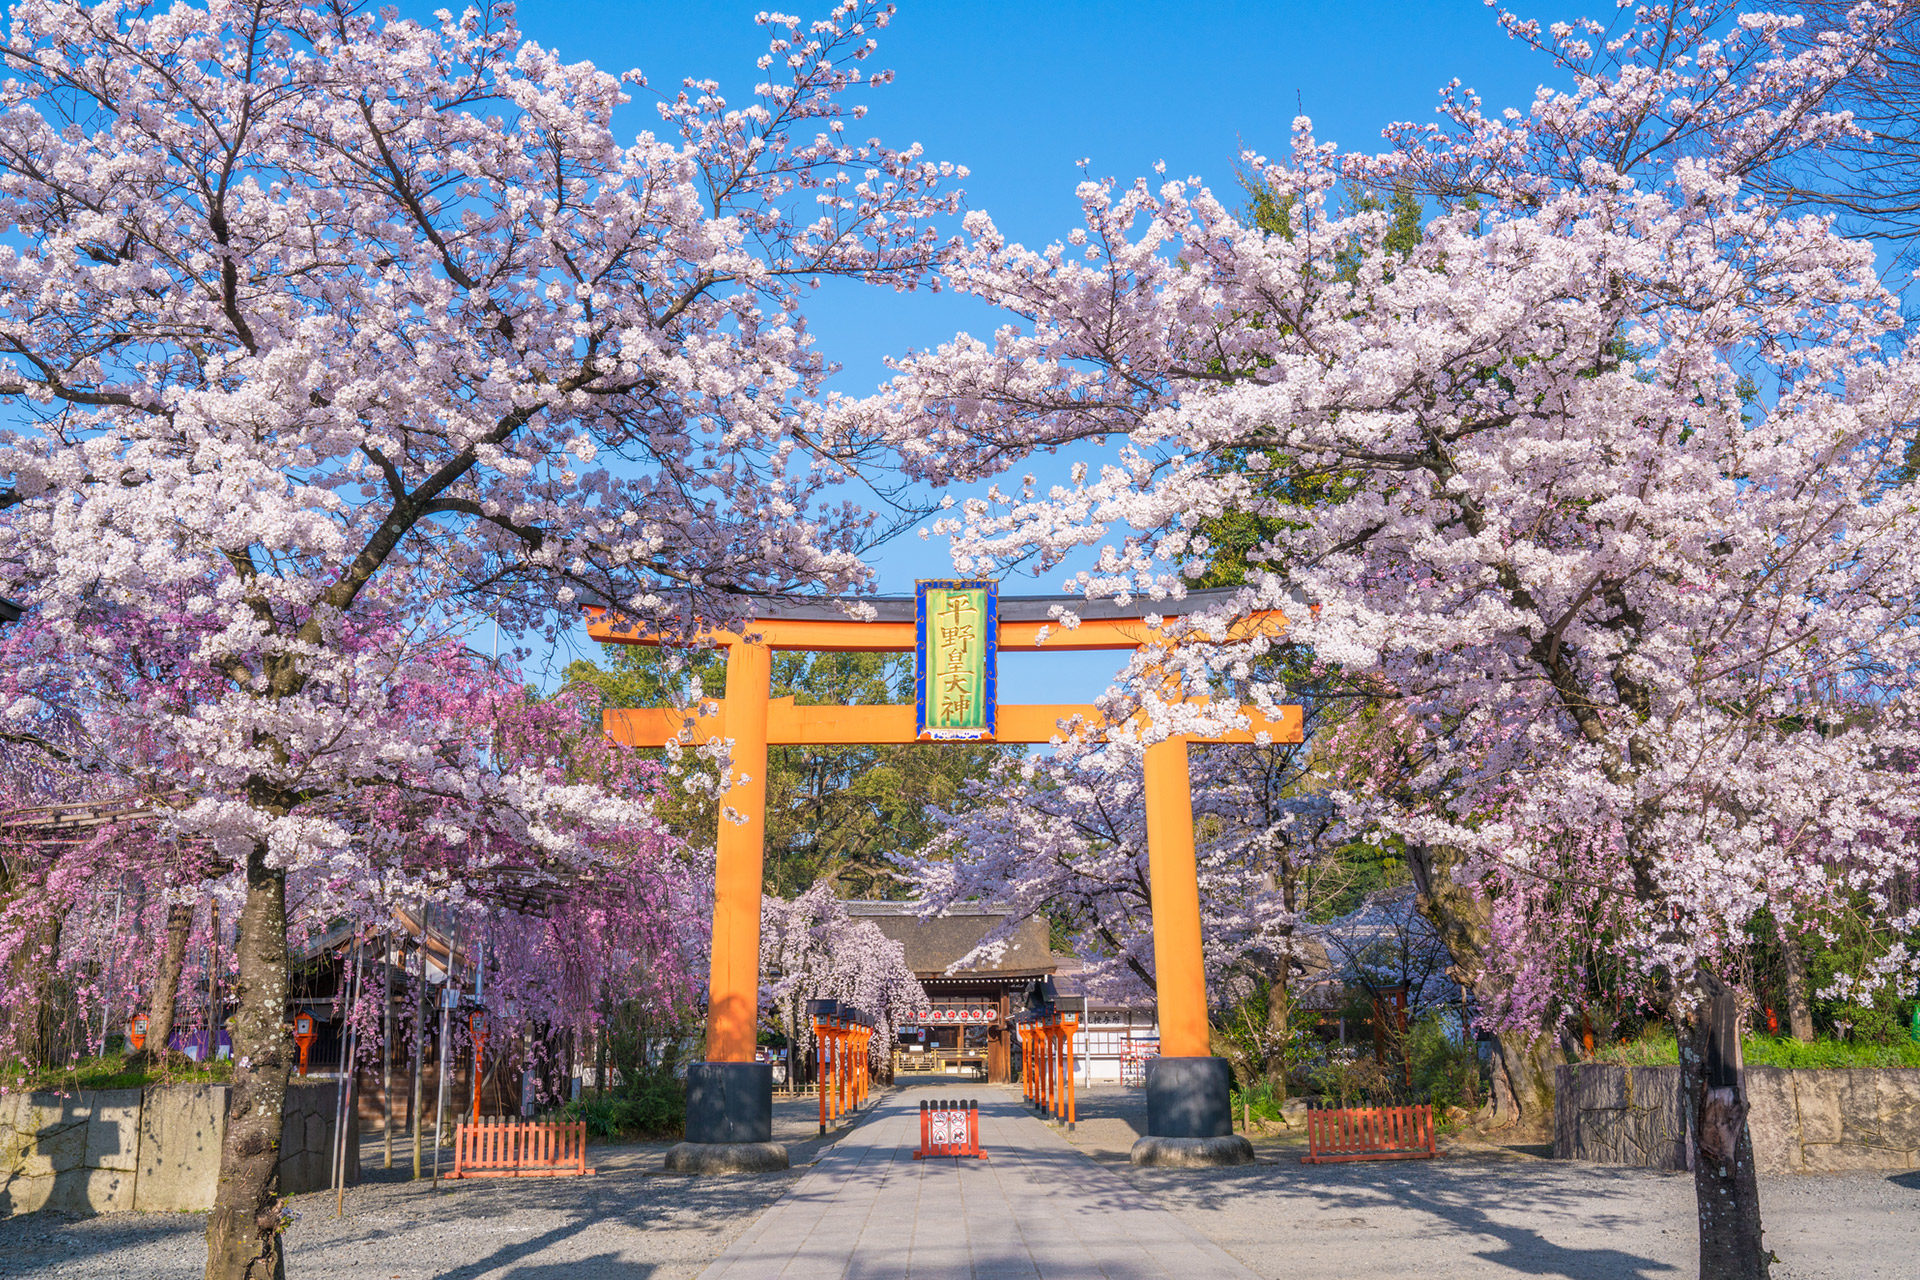 古くから桜の社として有名な京都の平野神社の魅力とは Caedekyoto カエデ京都 紅葉と伝統美を引き継ぐバッグ